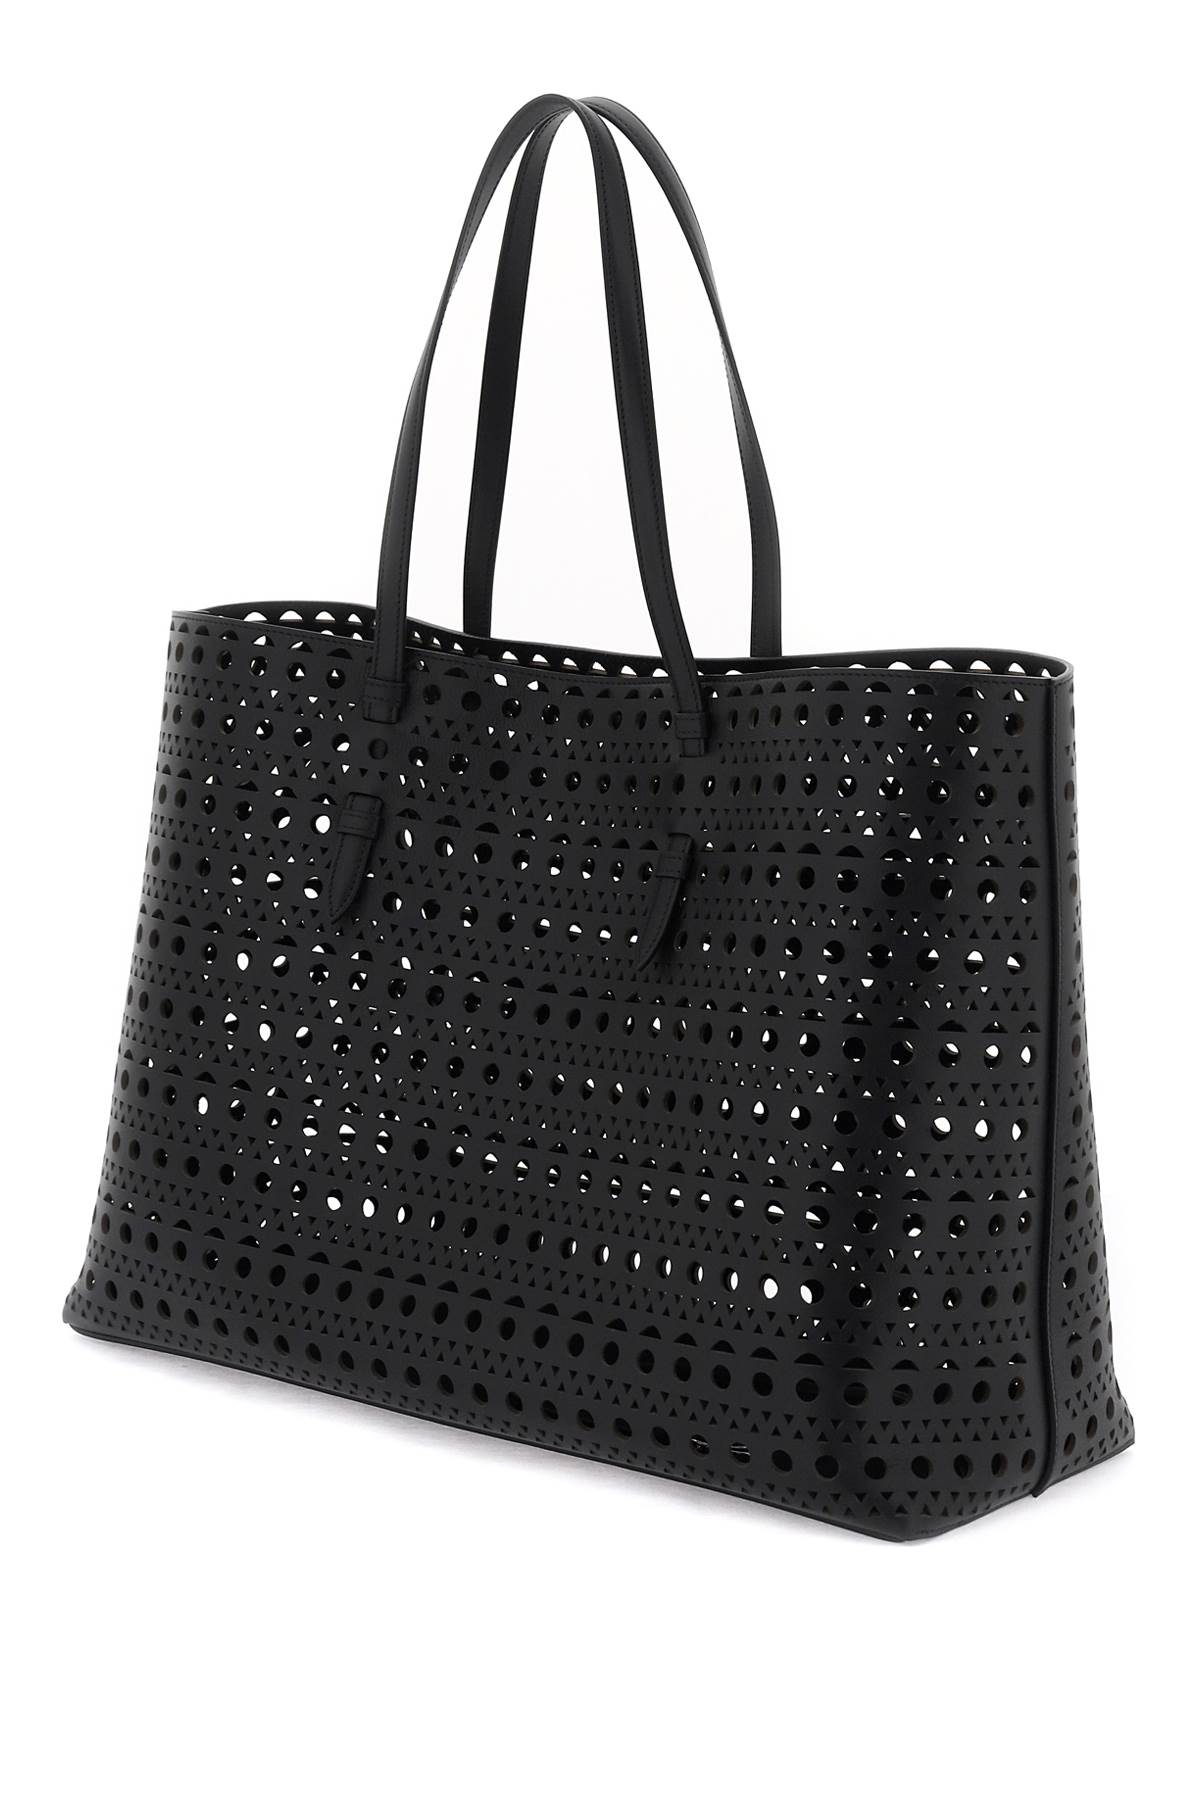 Shop Alaïa Tote Bag Mina In Black